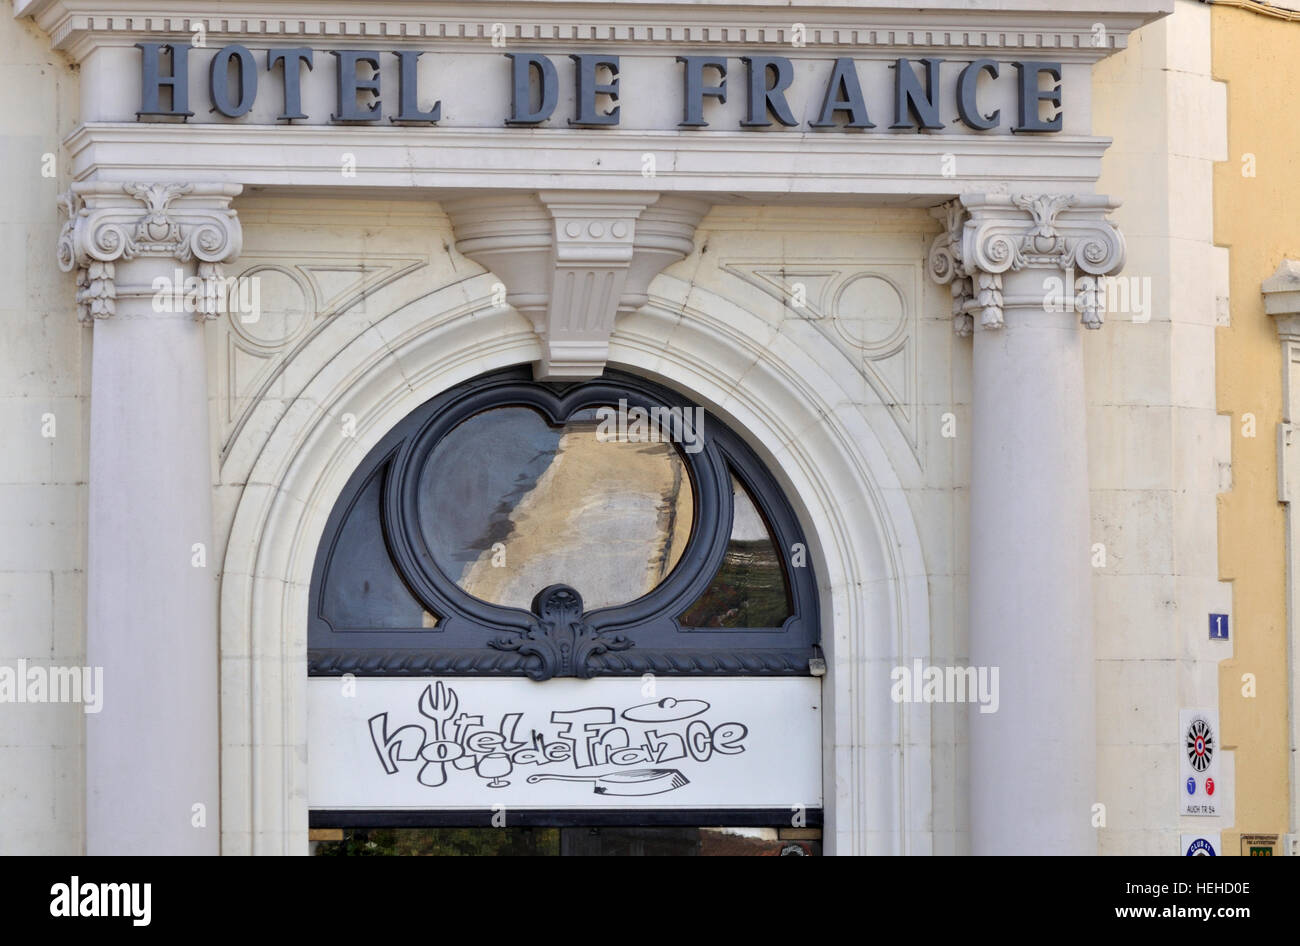 Signe au-dessus de l'entrée de l'Hôtel de France à la place de la libération, Auch, France. Banque D'Images